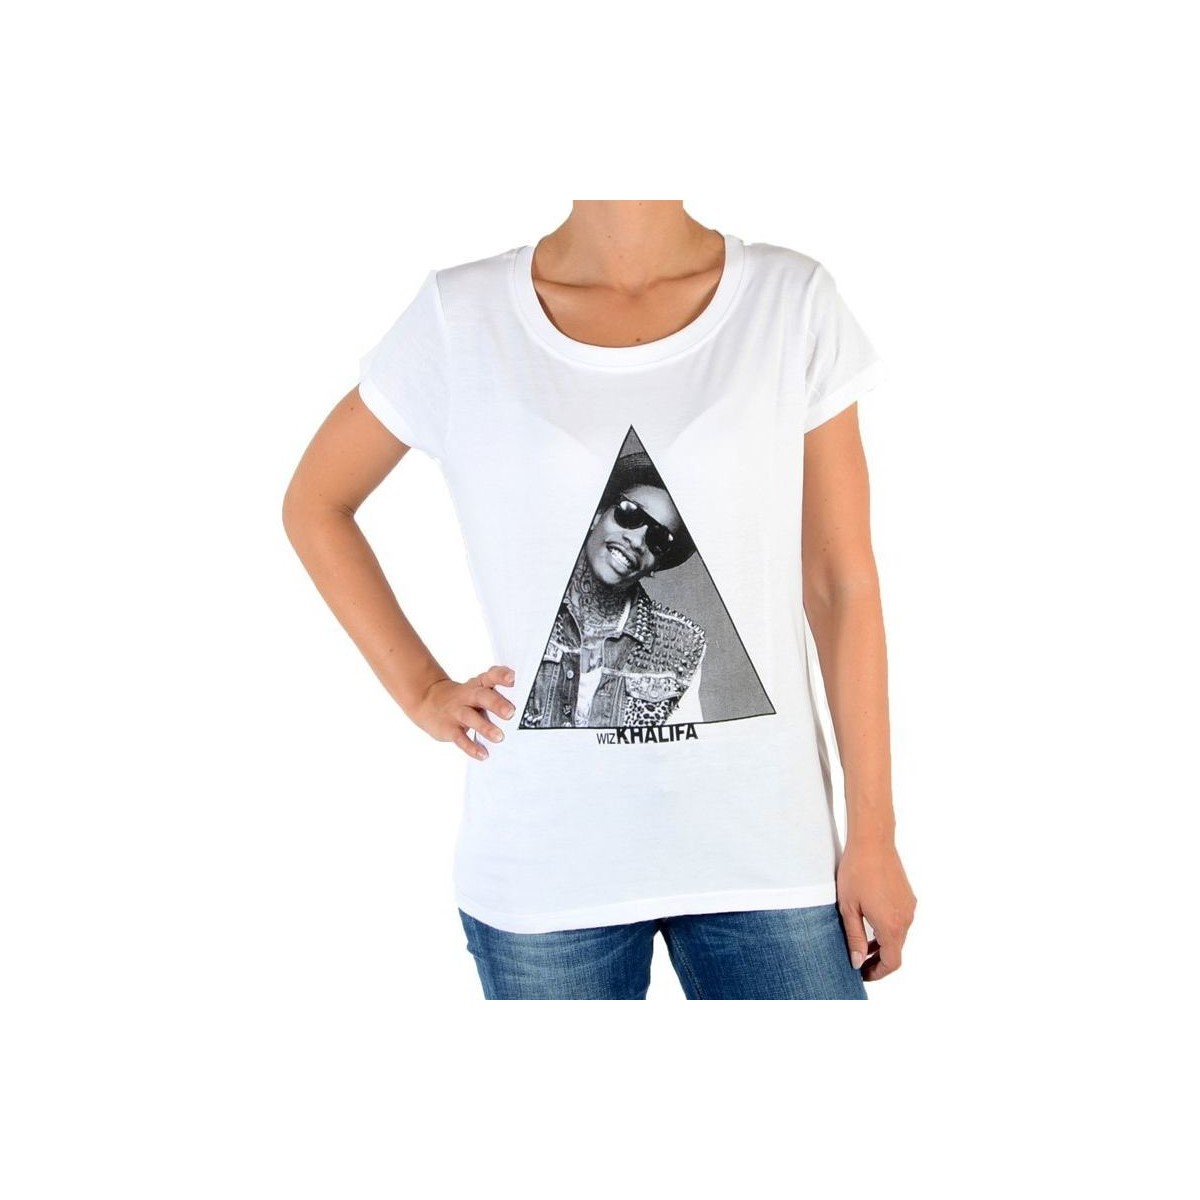 Υφασμάτινα Γυναίκα T-shirts & Μπλούζες Eleven Paris 32628 Άσπρο